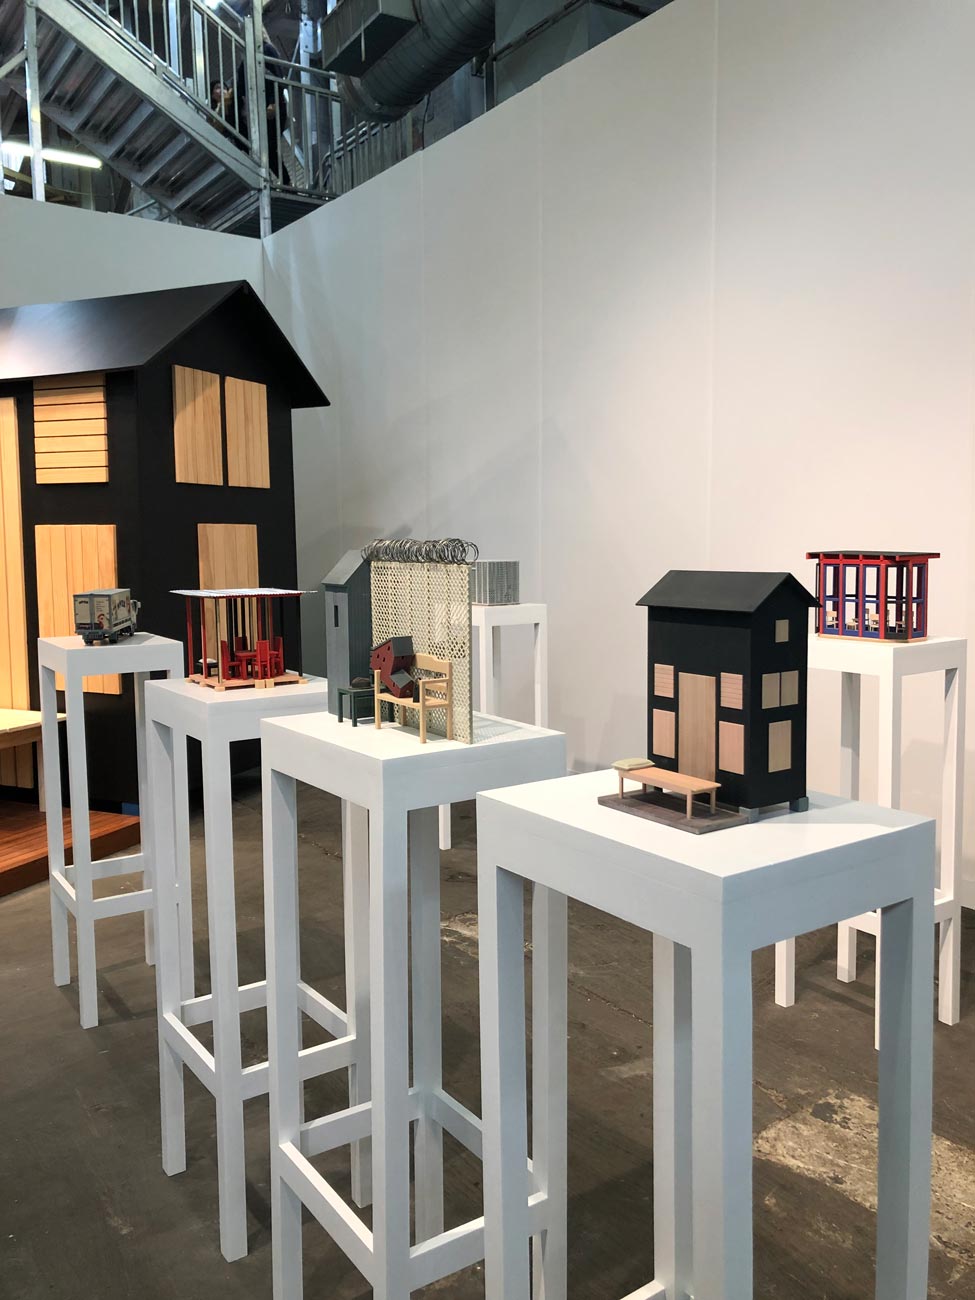 Casa miniatura de madera. Armory Show 2019.